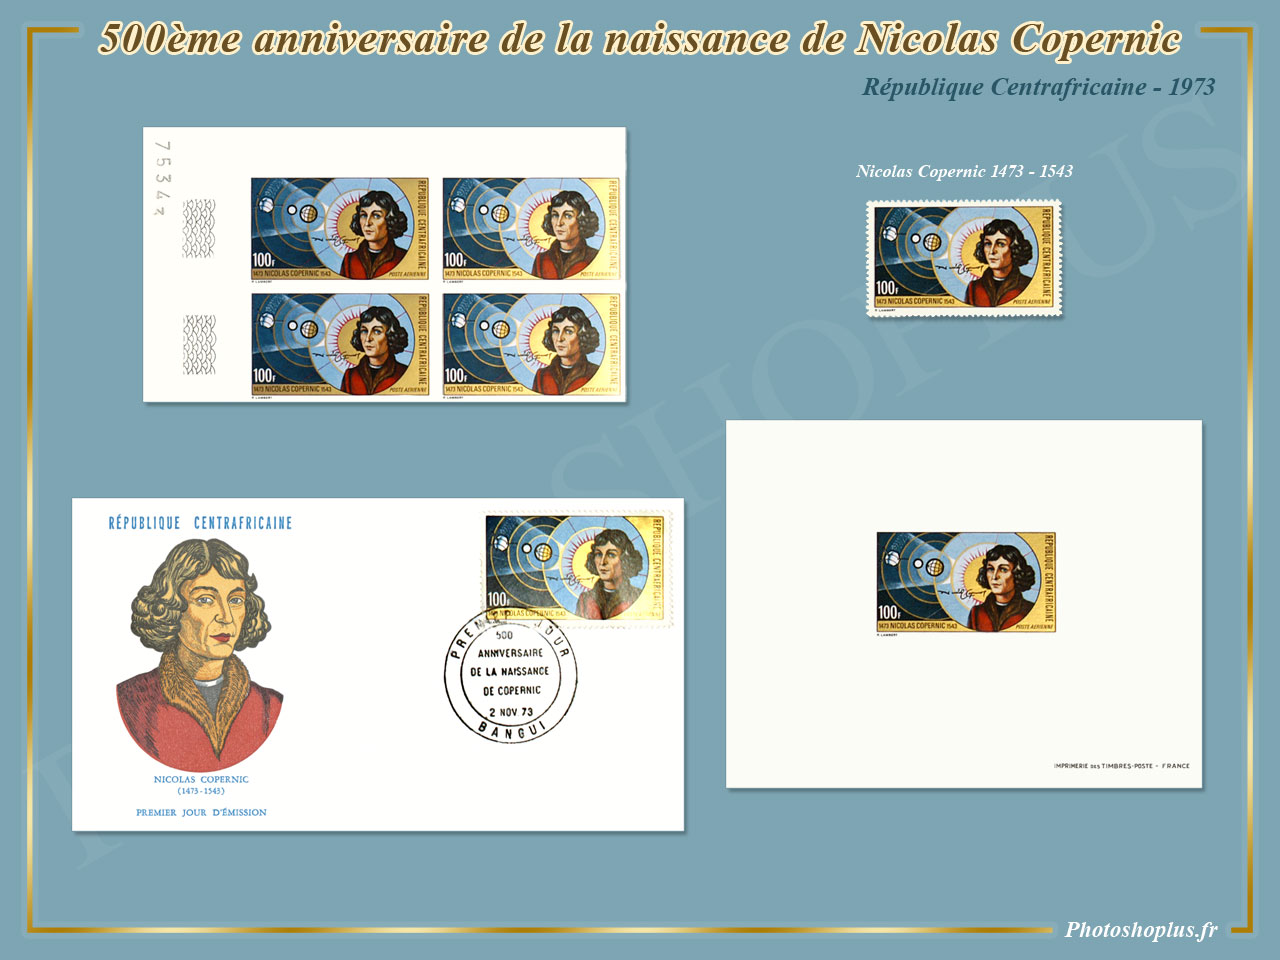 500ème anniversaire de la naissance de Nicolas Copernic